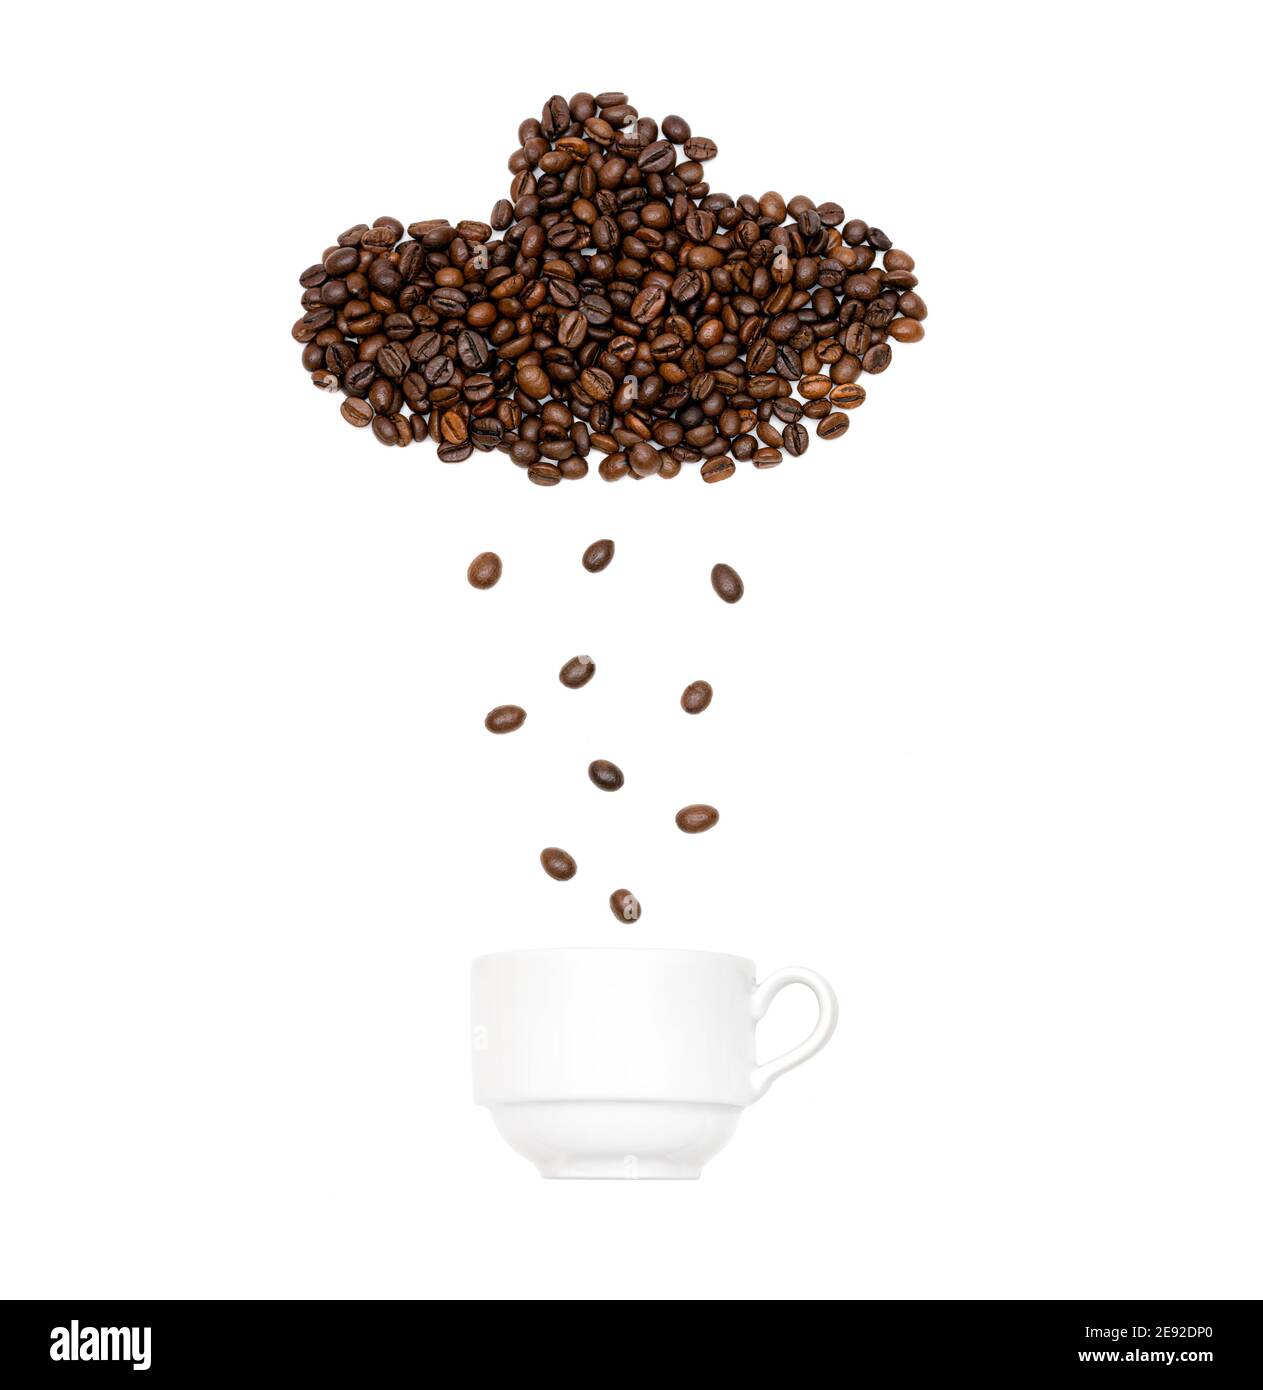 Kaffeebohnen in Form einer regnerischen Wolke angeordnet Über einer weißen Tasse Stockfoto